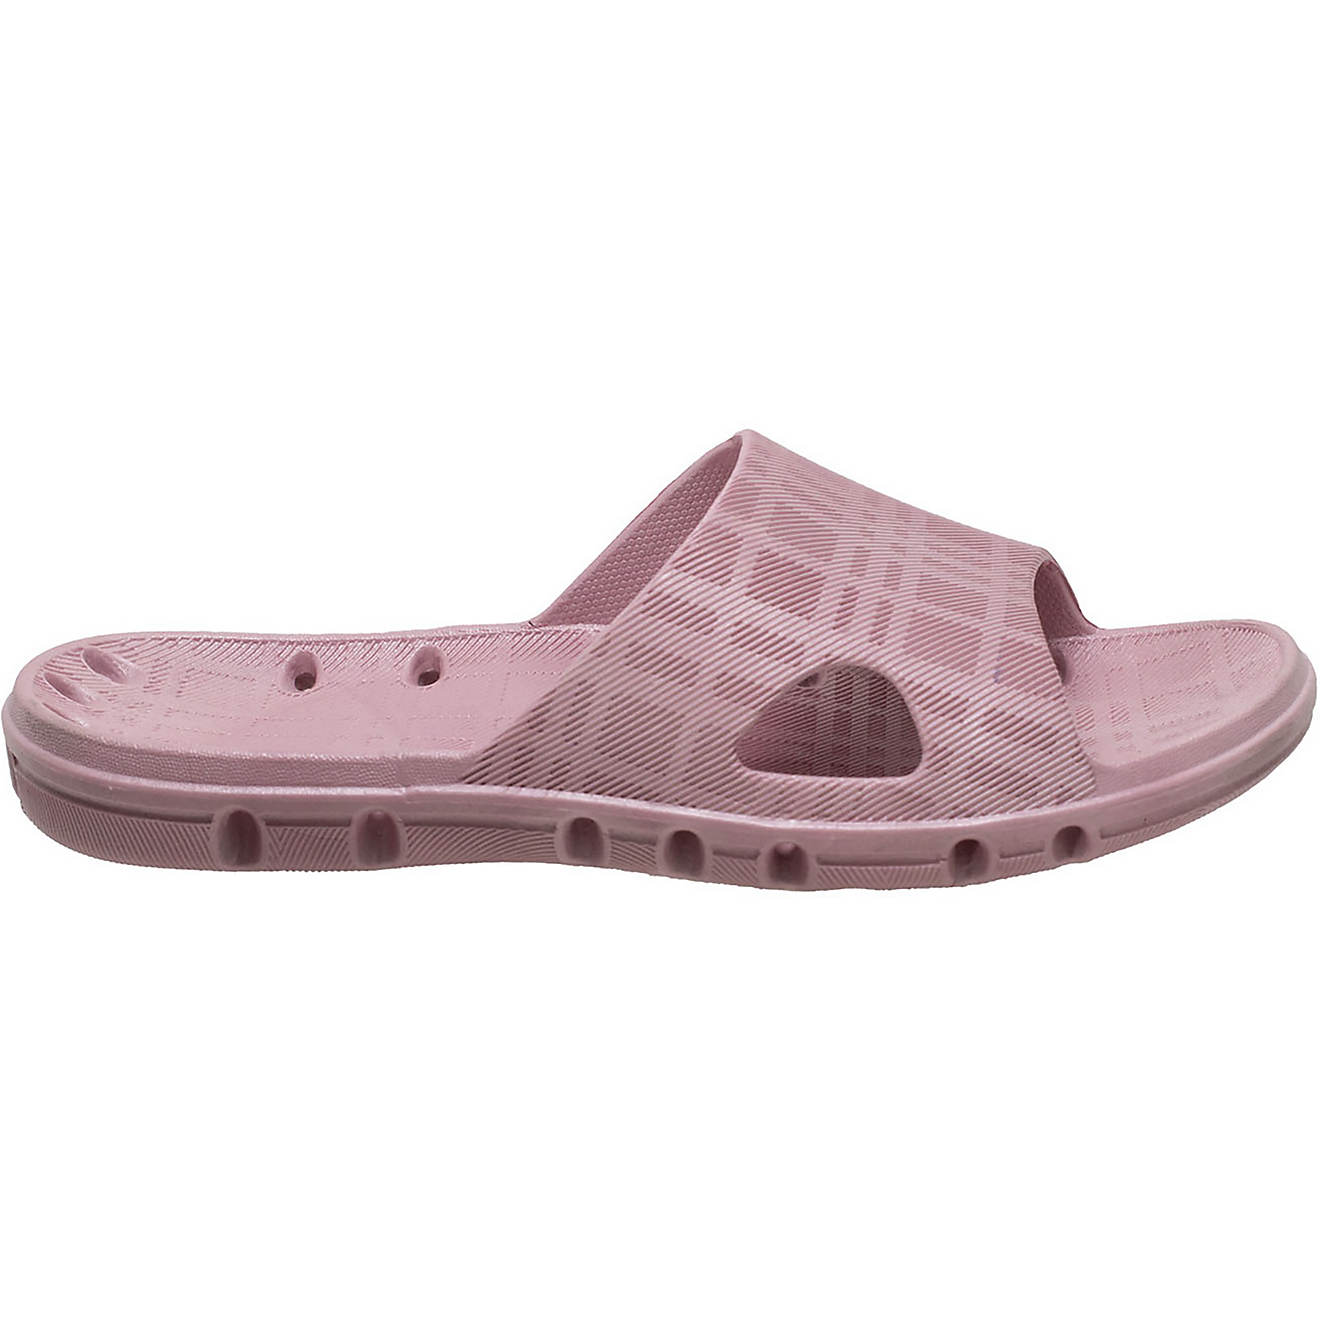 Tecs Women's PVC Slide Sandals                                                                                                   - view number 1